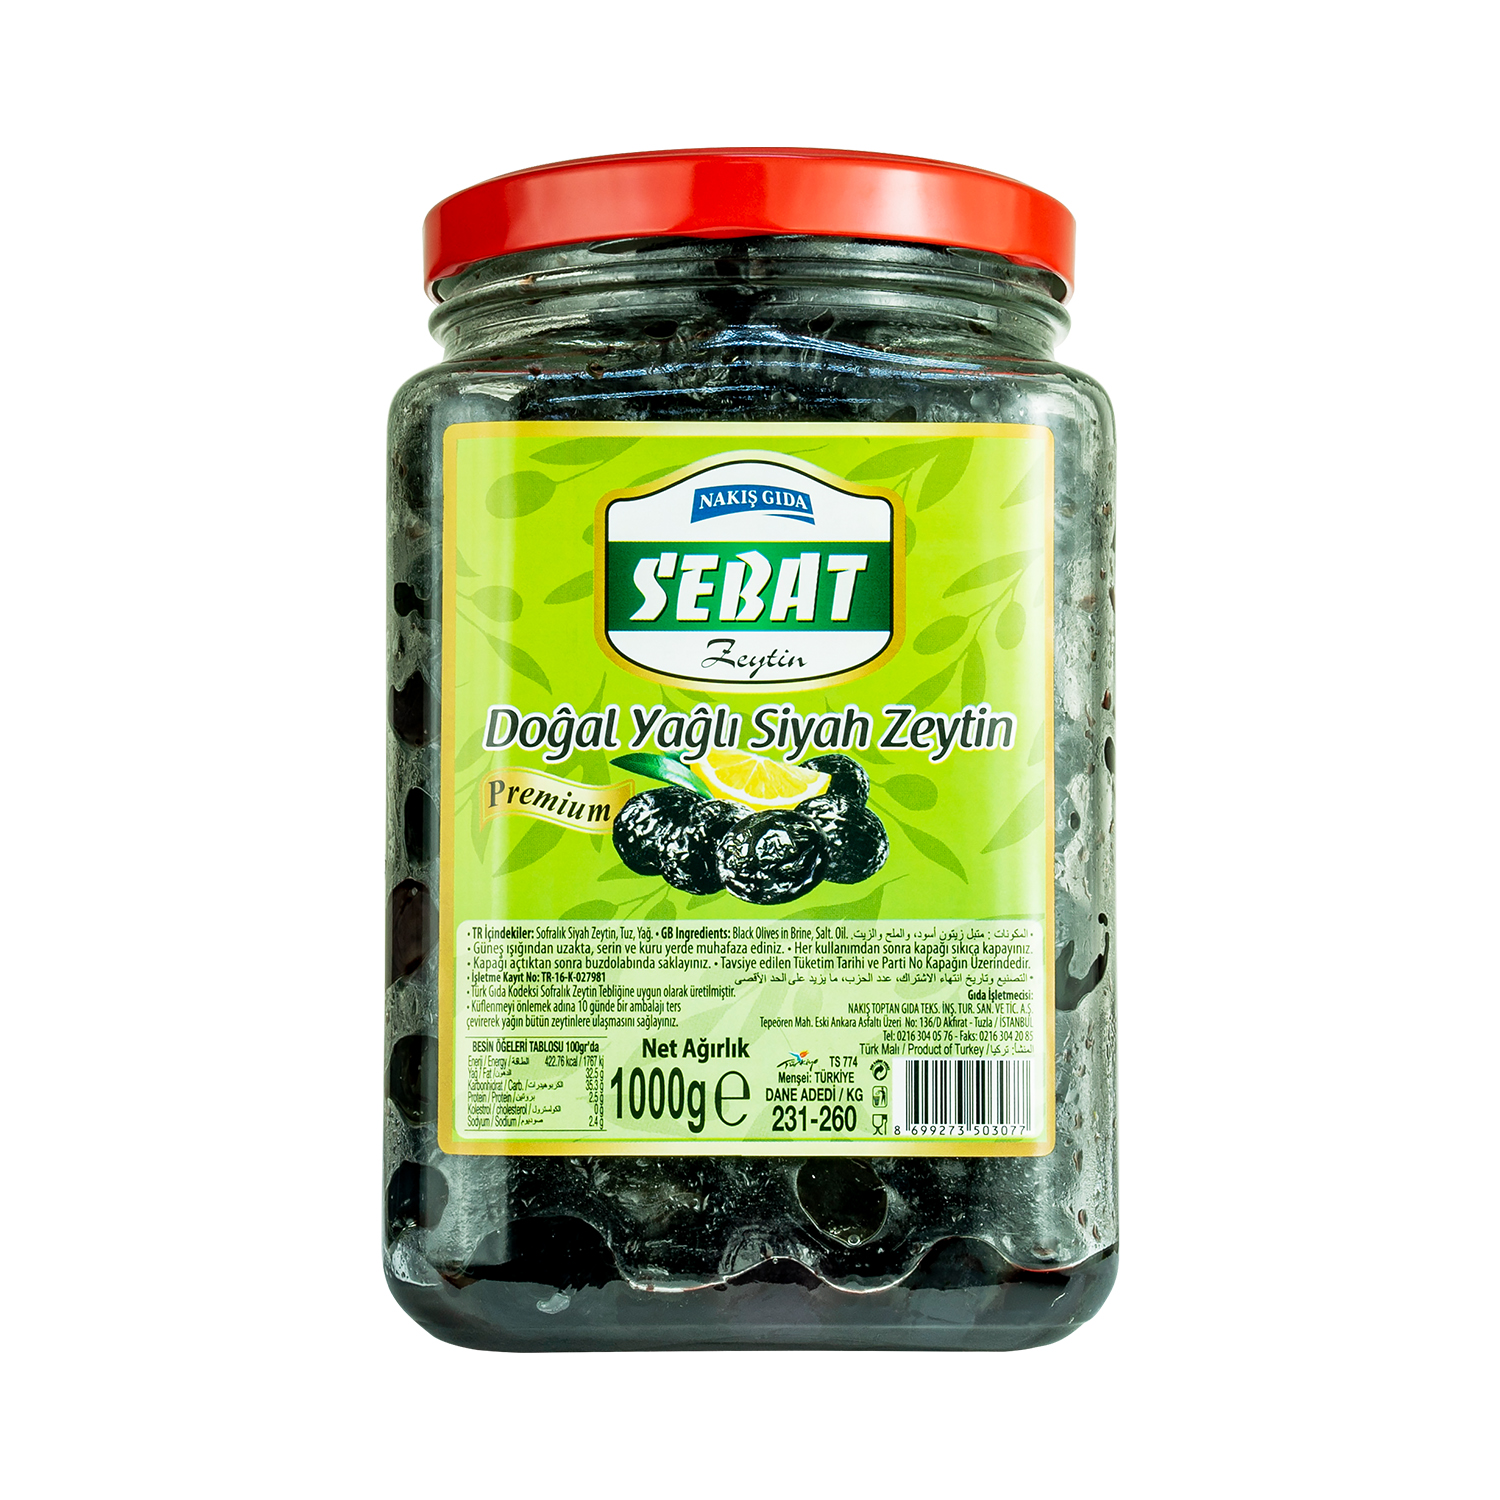 Sebat 231-260 Premium Yağlı Siyah Zeytin 1 KG